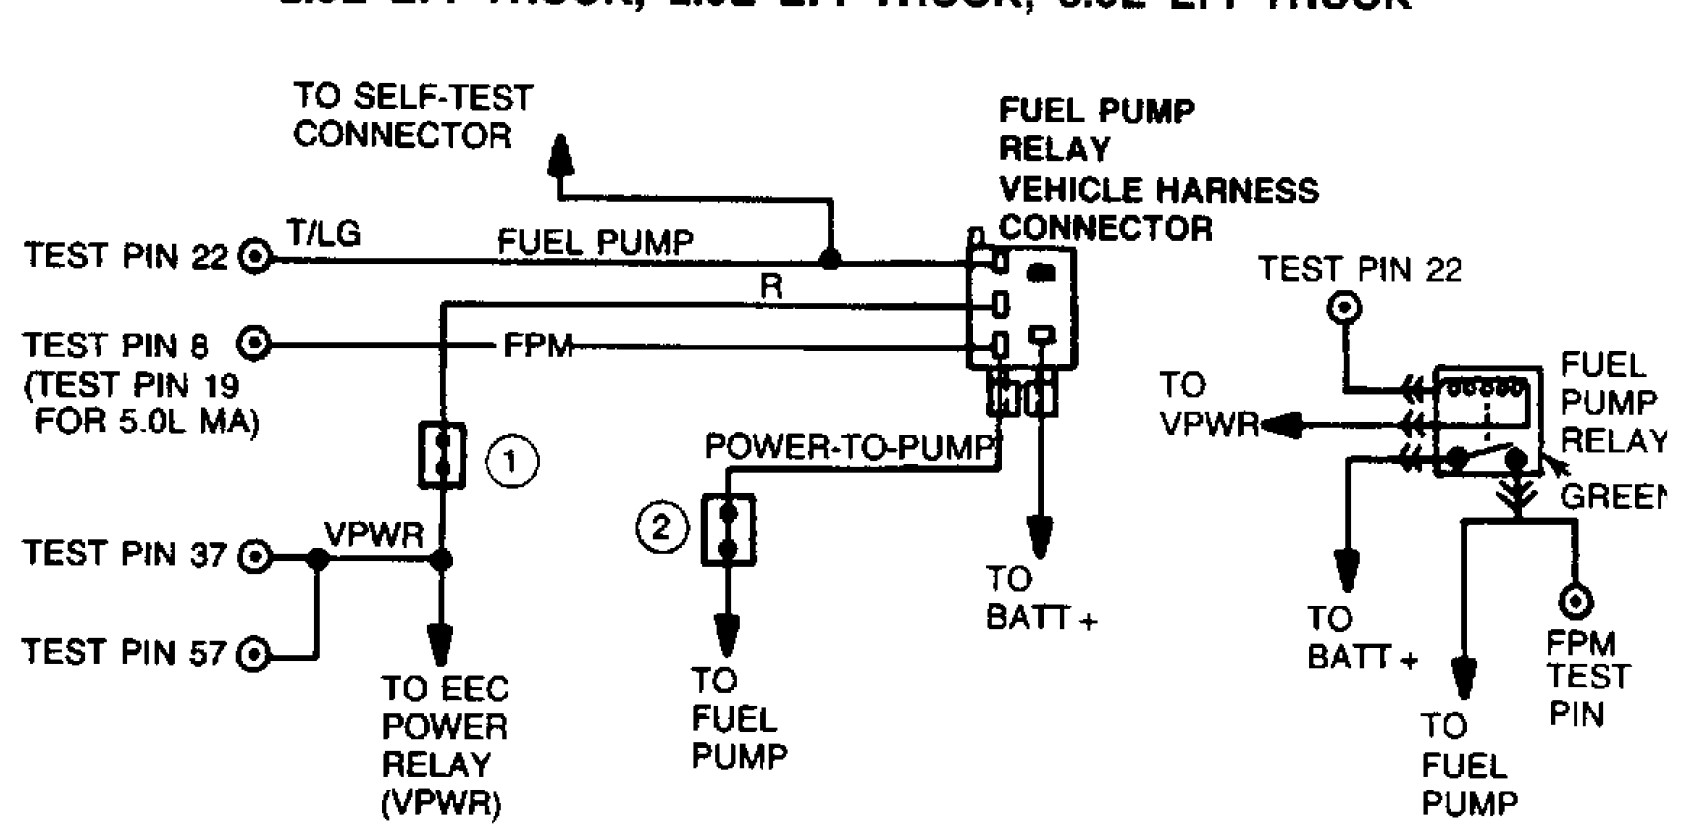 Fuel Pump Diagram 1994 Ranger Fuel Pump Wiring Search Wiring Diagrams